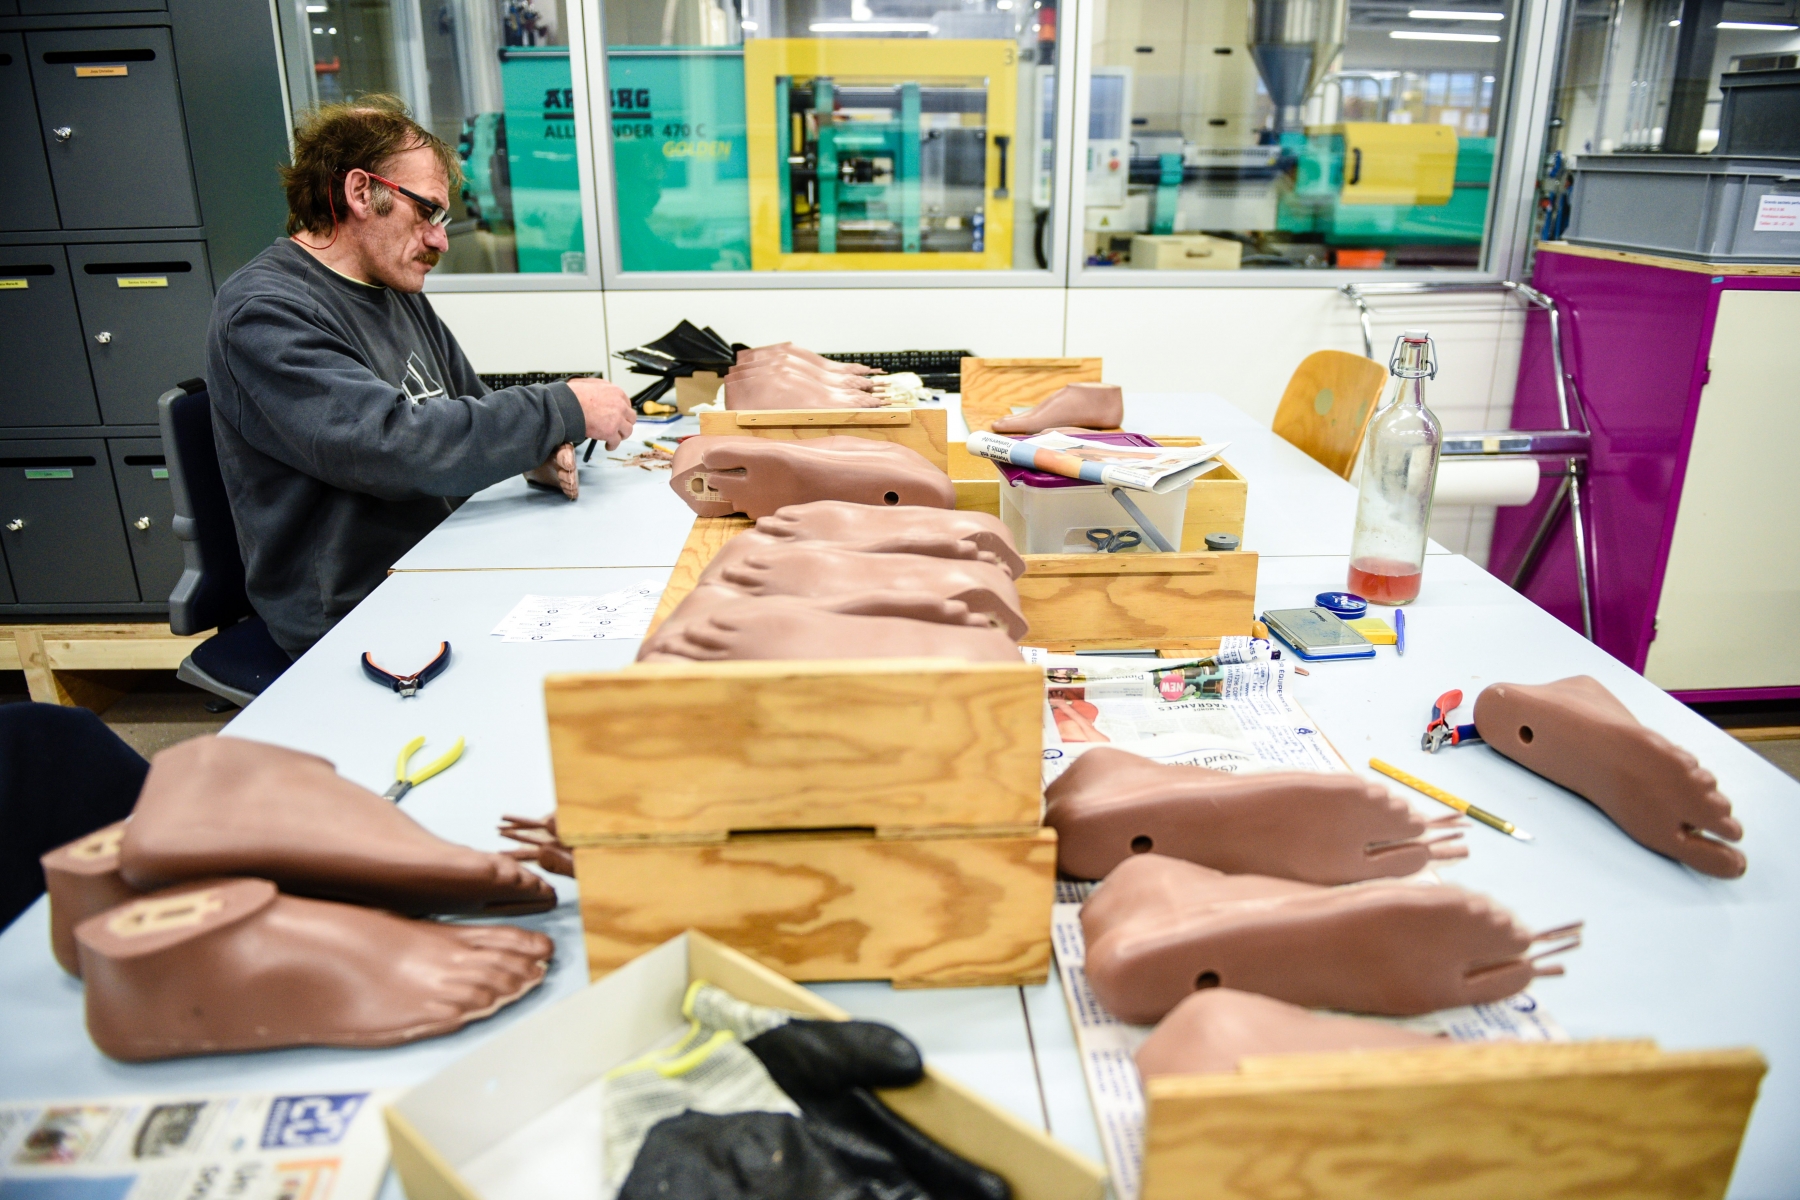 La collaboration concerne la fabrication et la distribution de composants d'orthèses et de prothèses.